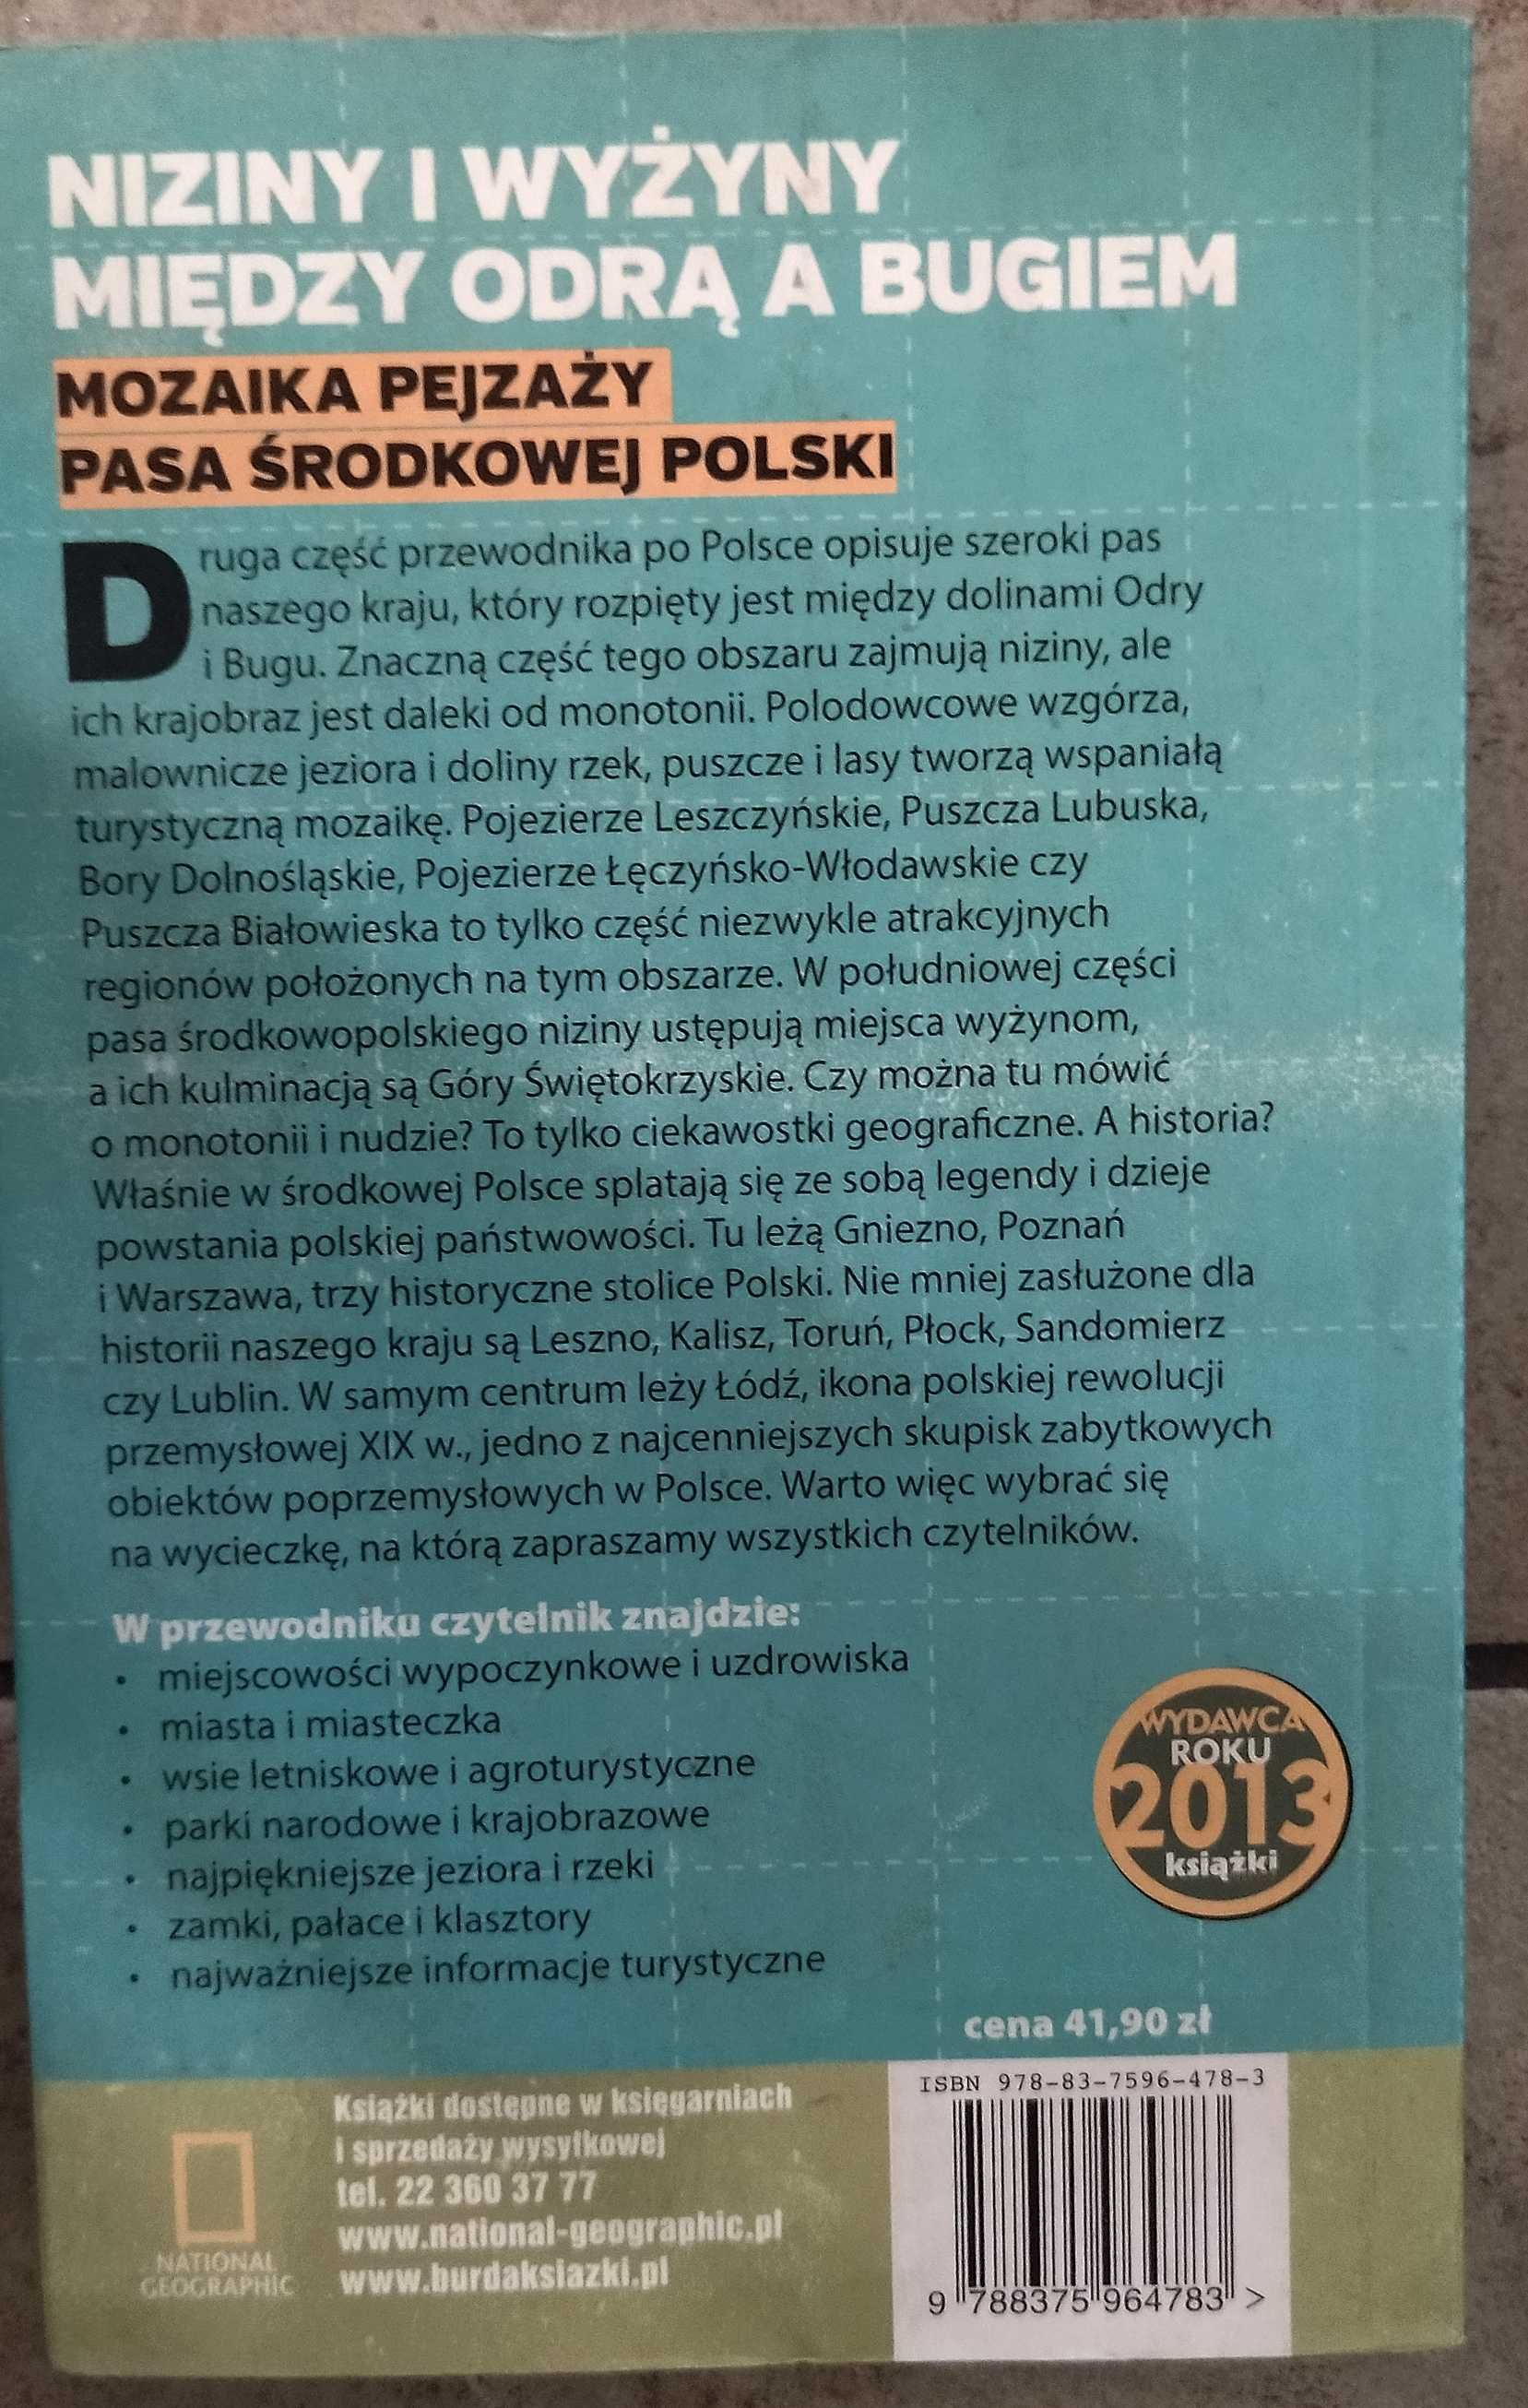 "Polska wzdłuż i wszerz. Niziny i wyżyny między Odrą a Bugiem"